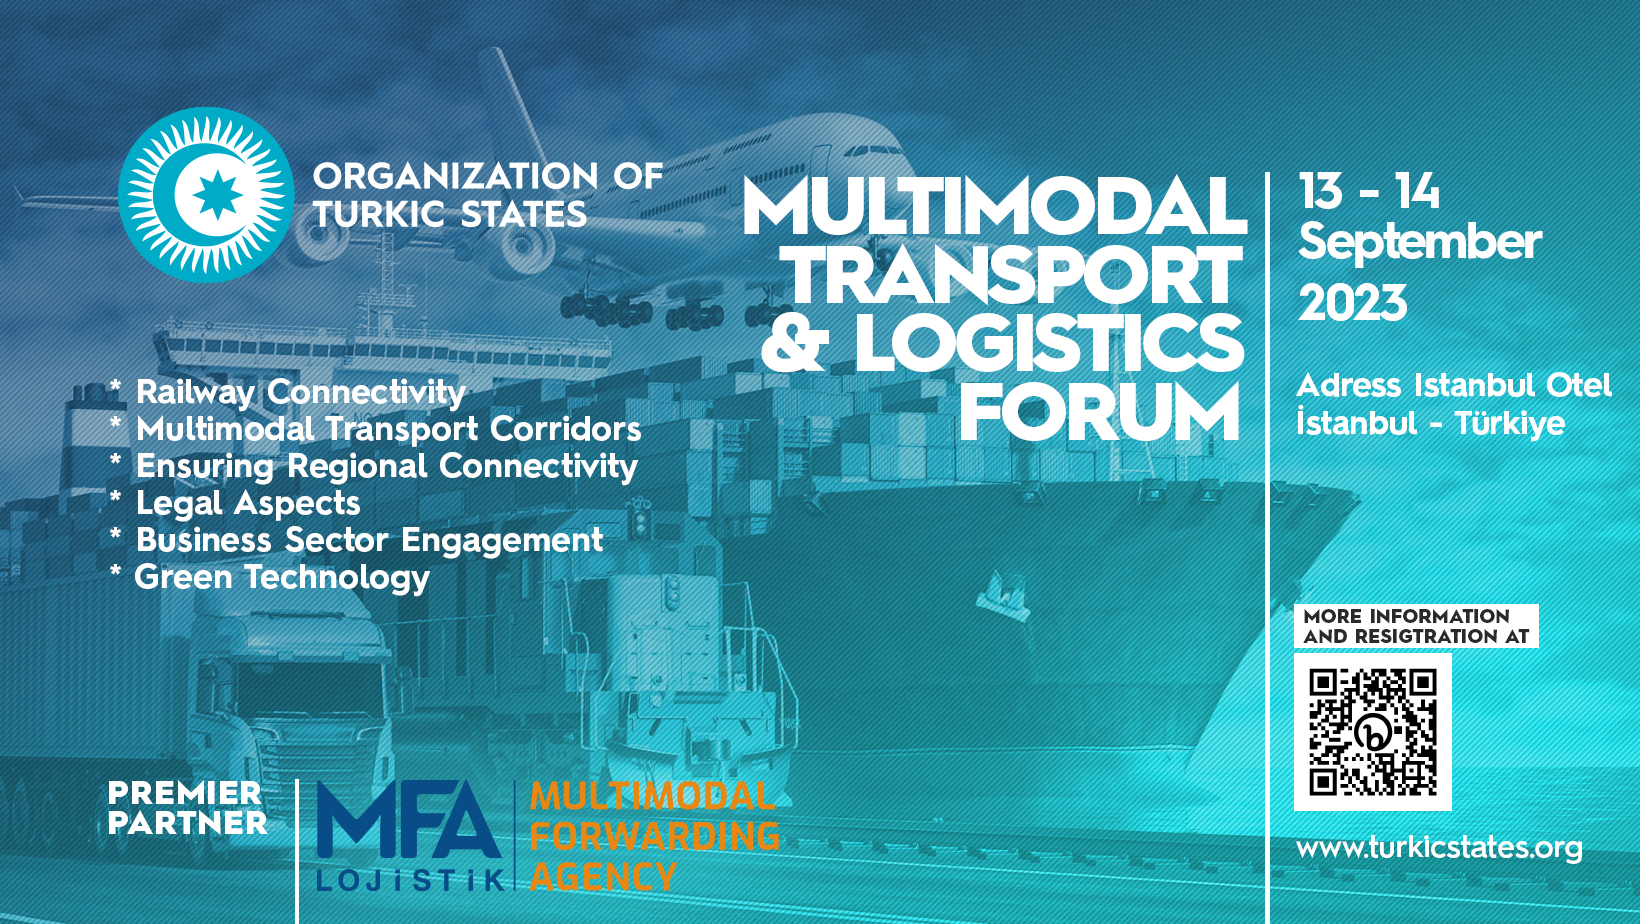 Multimodal Taşımacılık ve Lojistik Forumu 13-14 Eylül 2023 tarihlerinde İstanbul'da 15 Mayıs 2024